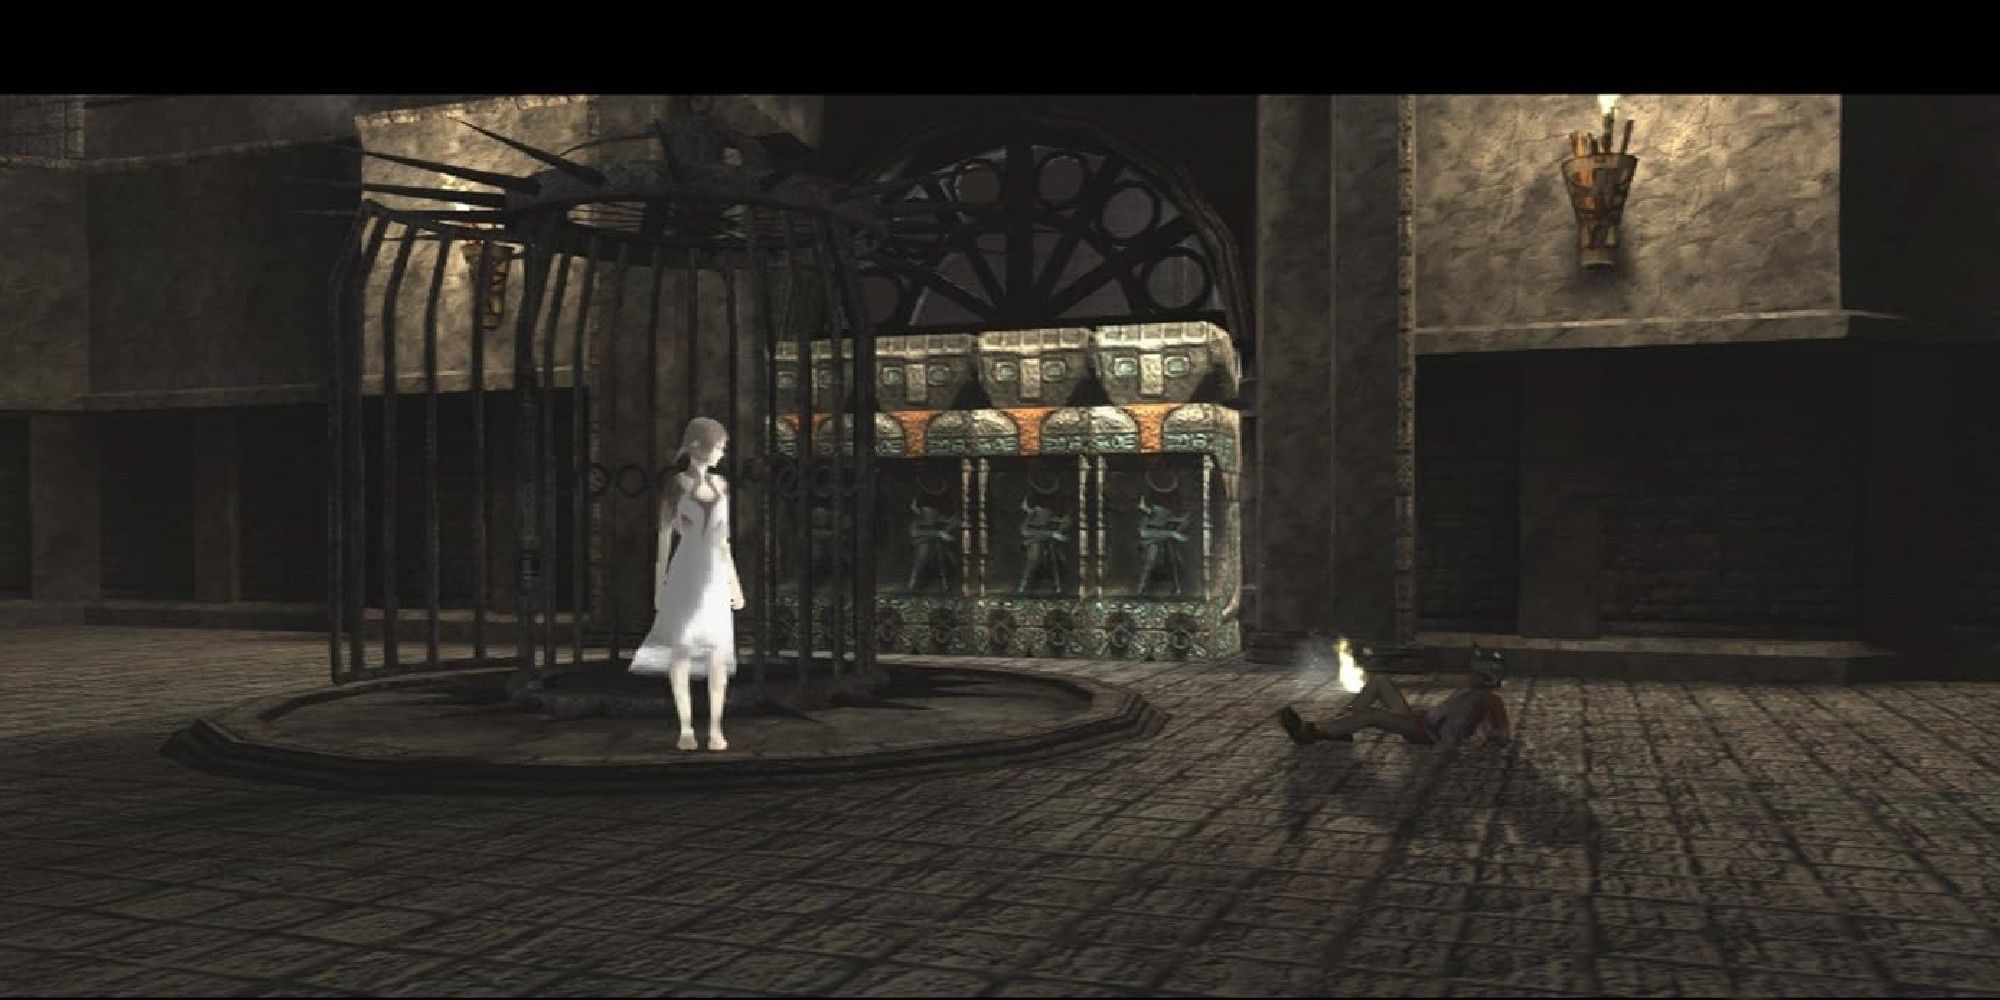 Ico und Yorda treffen sich neben einem Käfig.